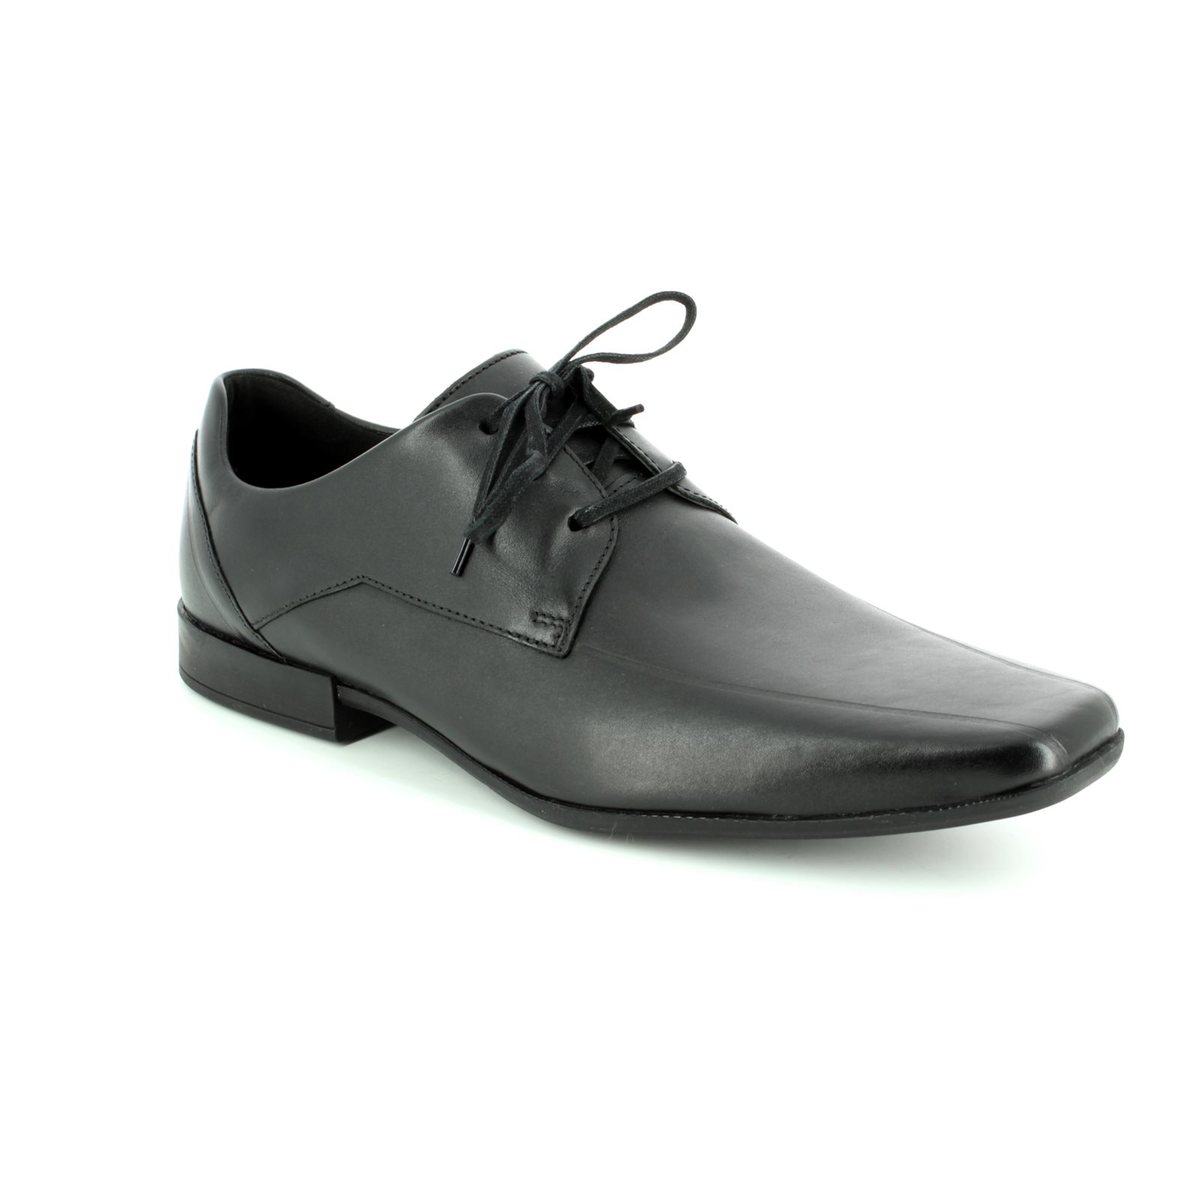 Clarks Glement Black formal shoes